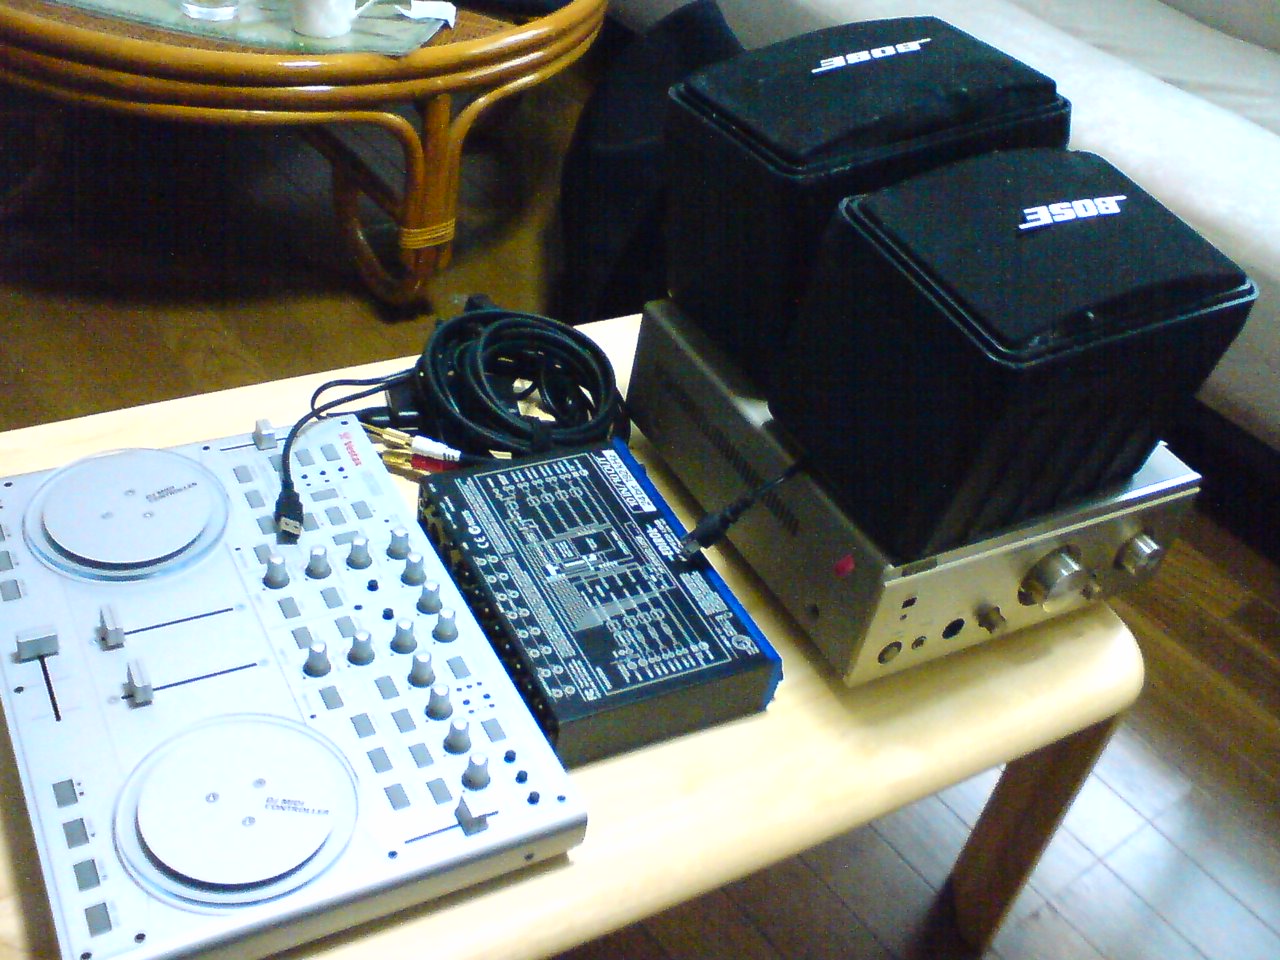 Sound equipment